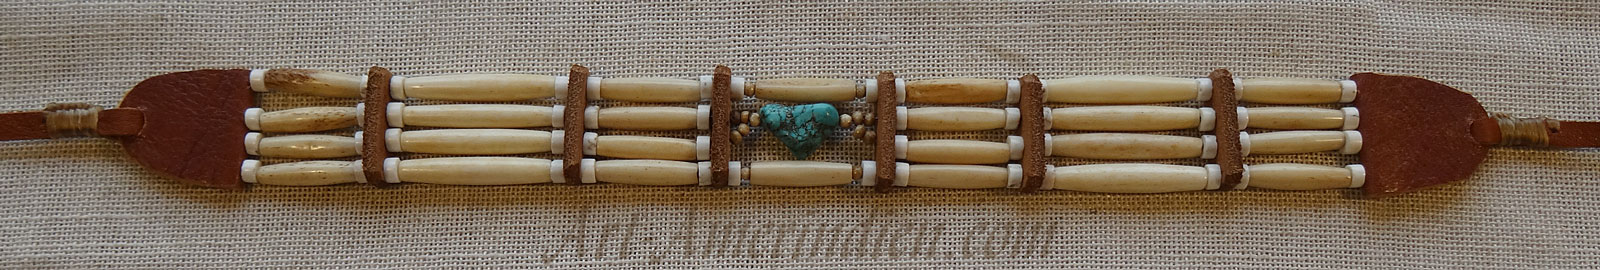 Collier ras de cou ou choker indien 4 rangées de tubes en os et perles de pierre blanche, gemme de turquoise, lacet en cuir